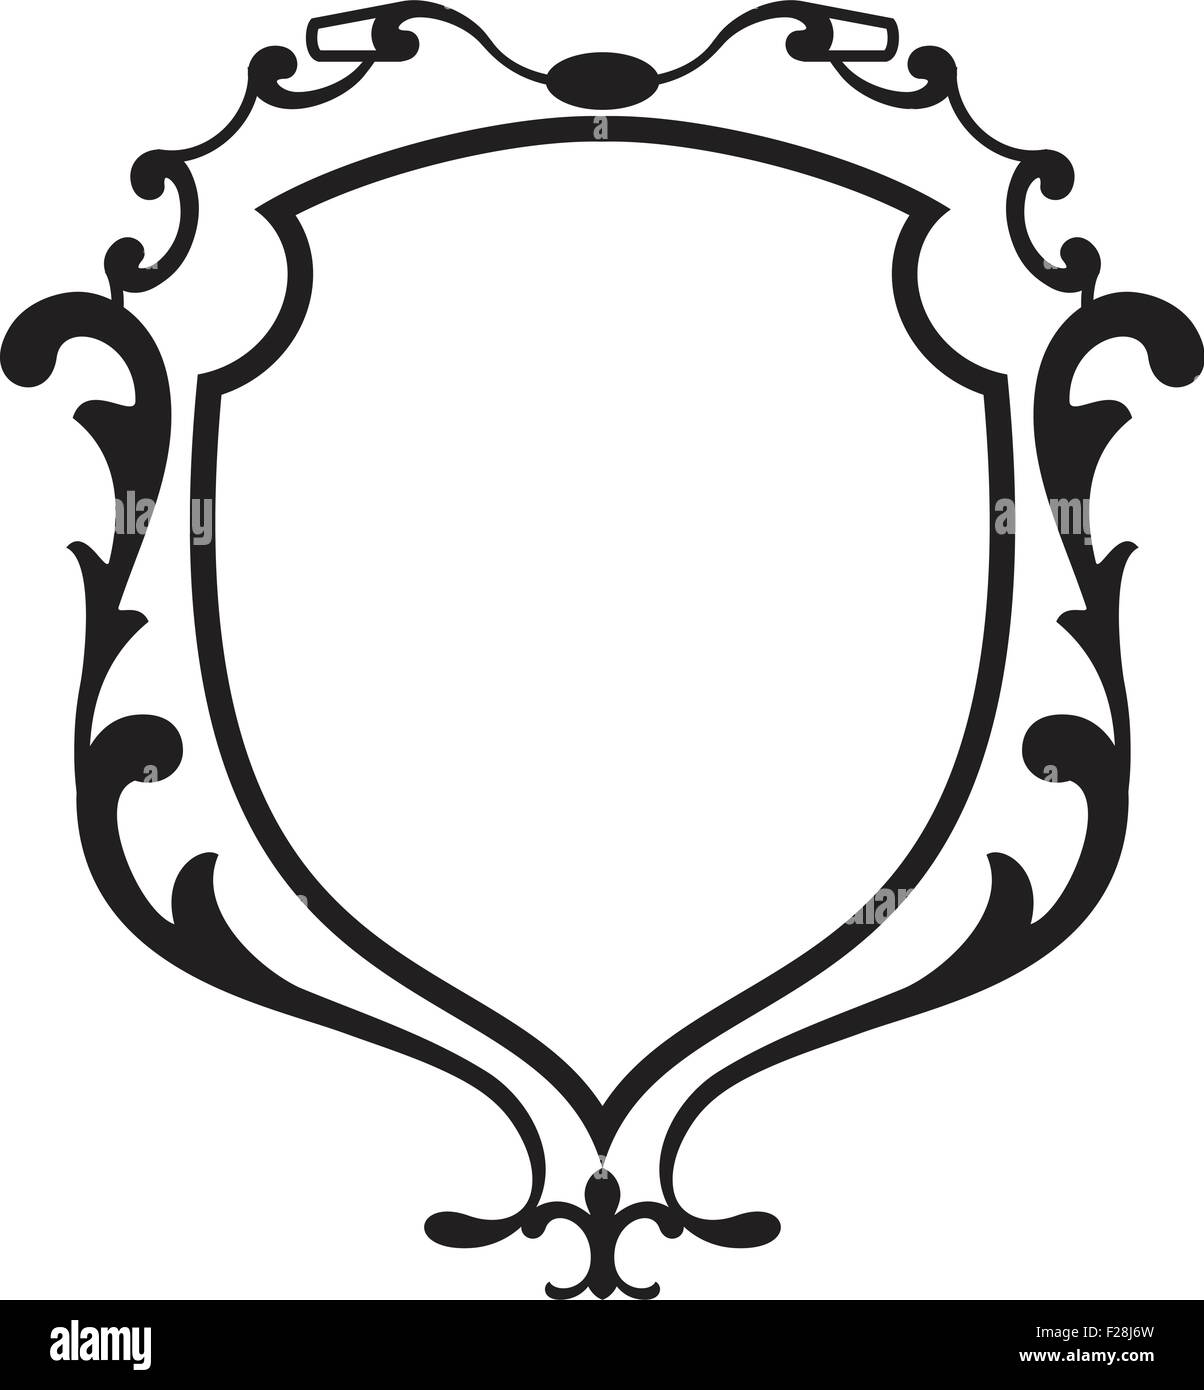 Escudo barroco Imágenes de stock en blanco y negro - Alamy